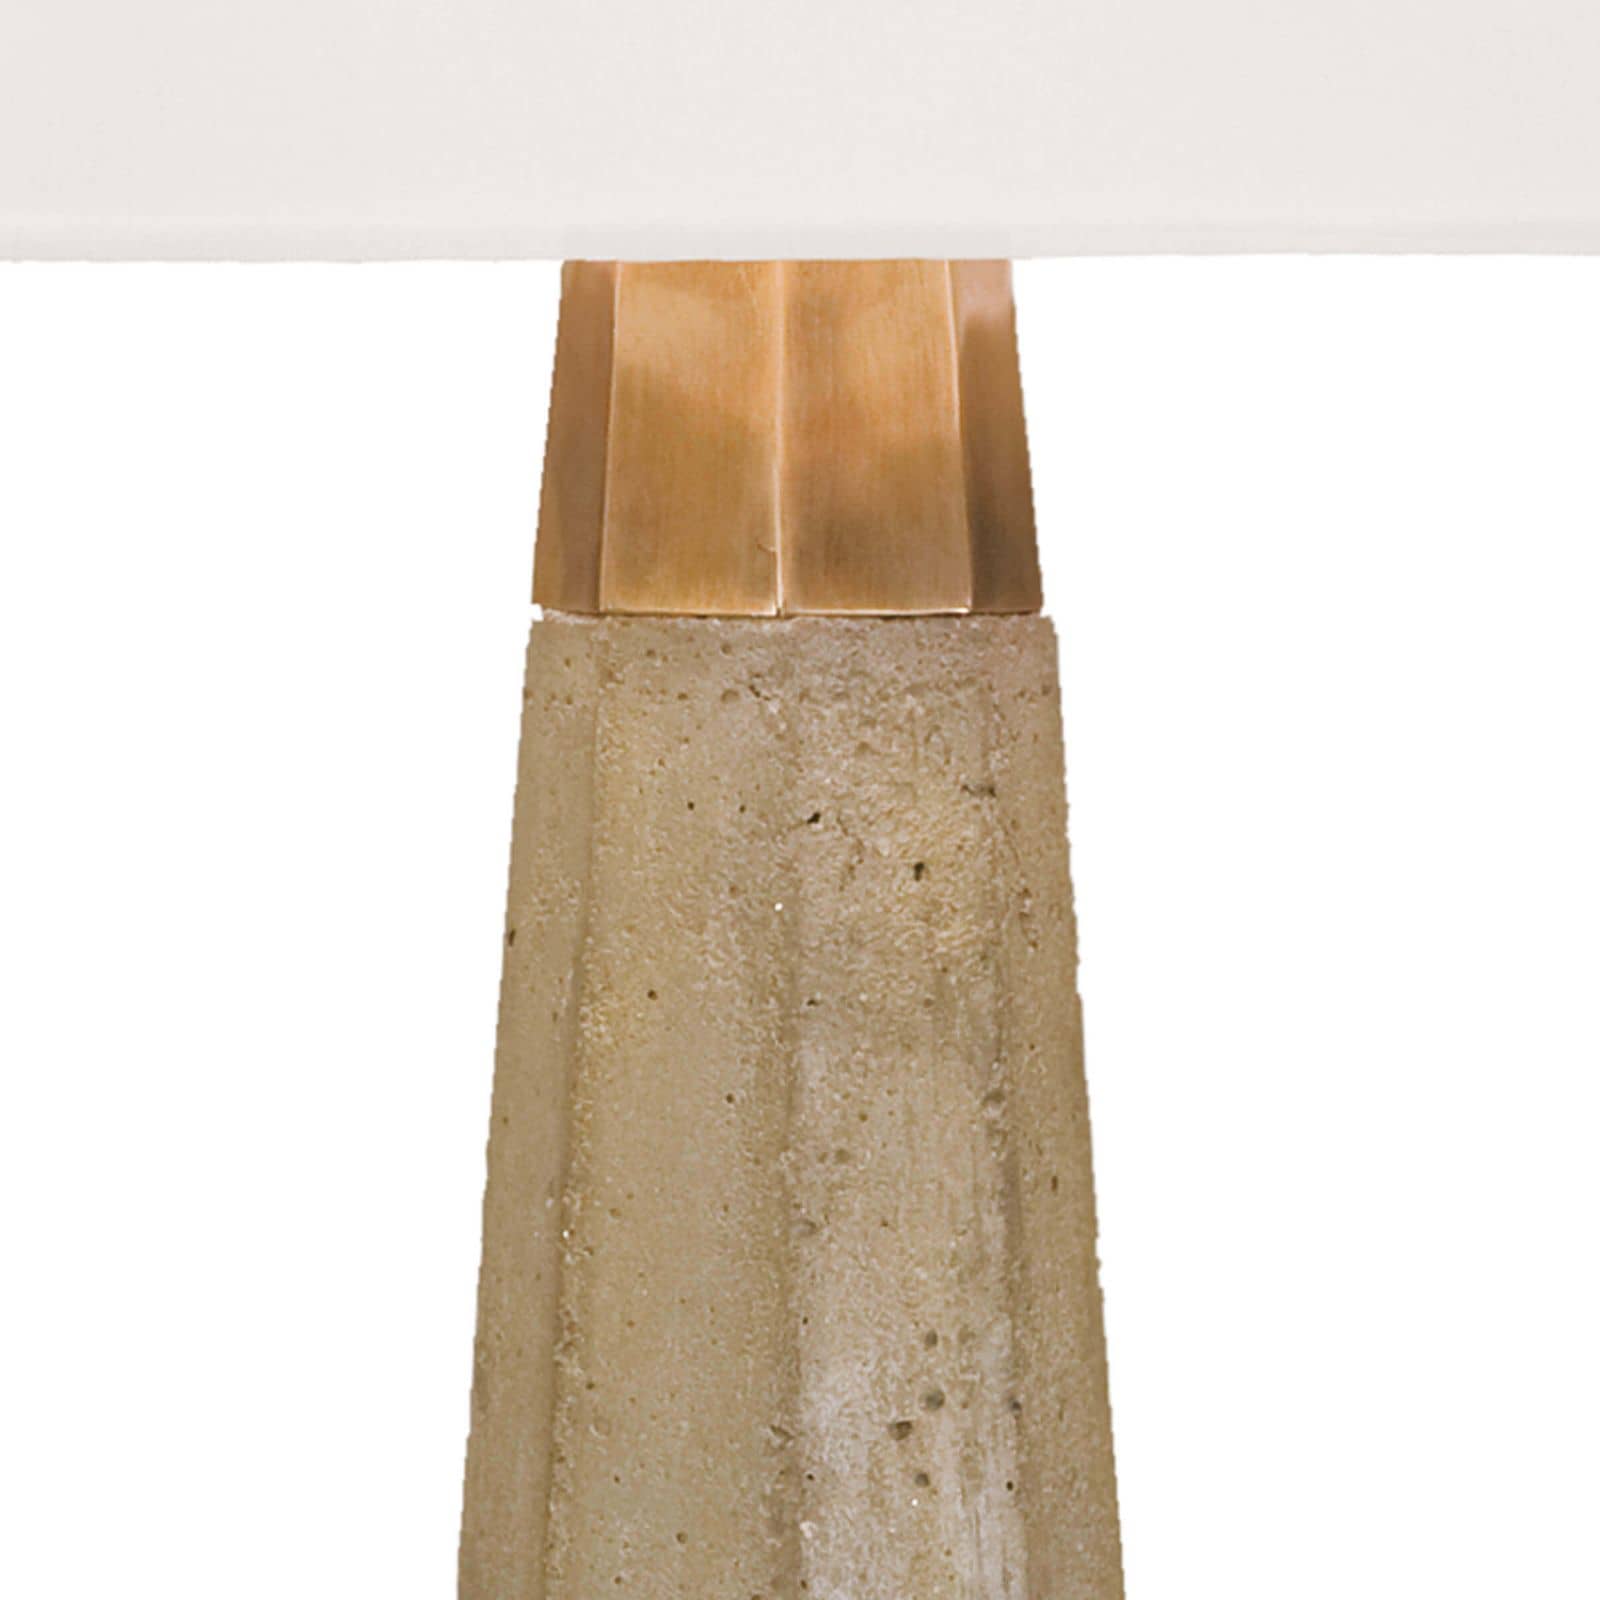 Regina Andrew Beretta Concrete Table Lamp